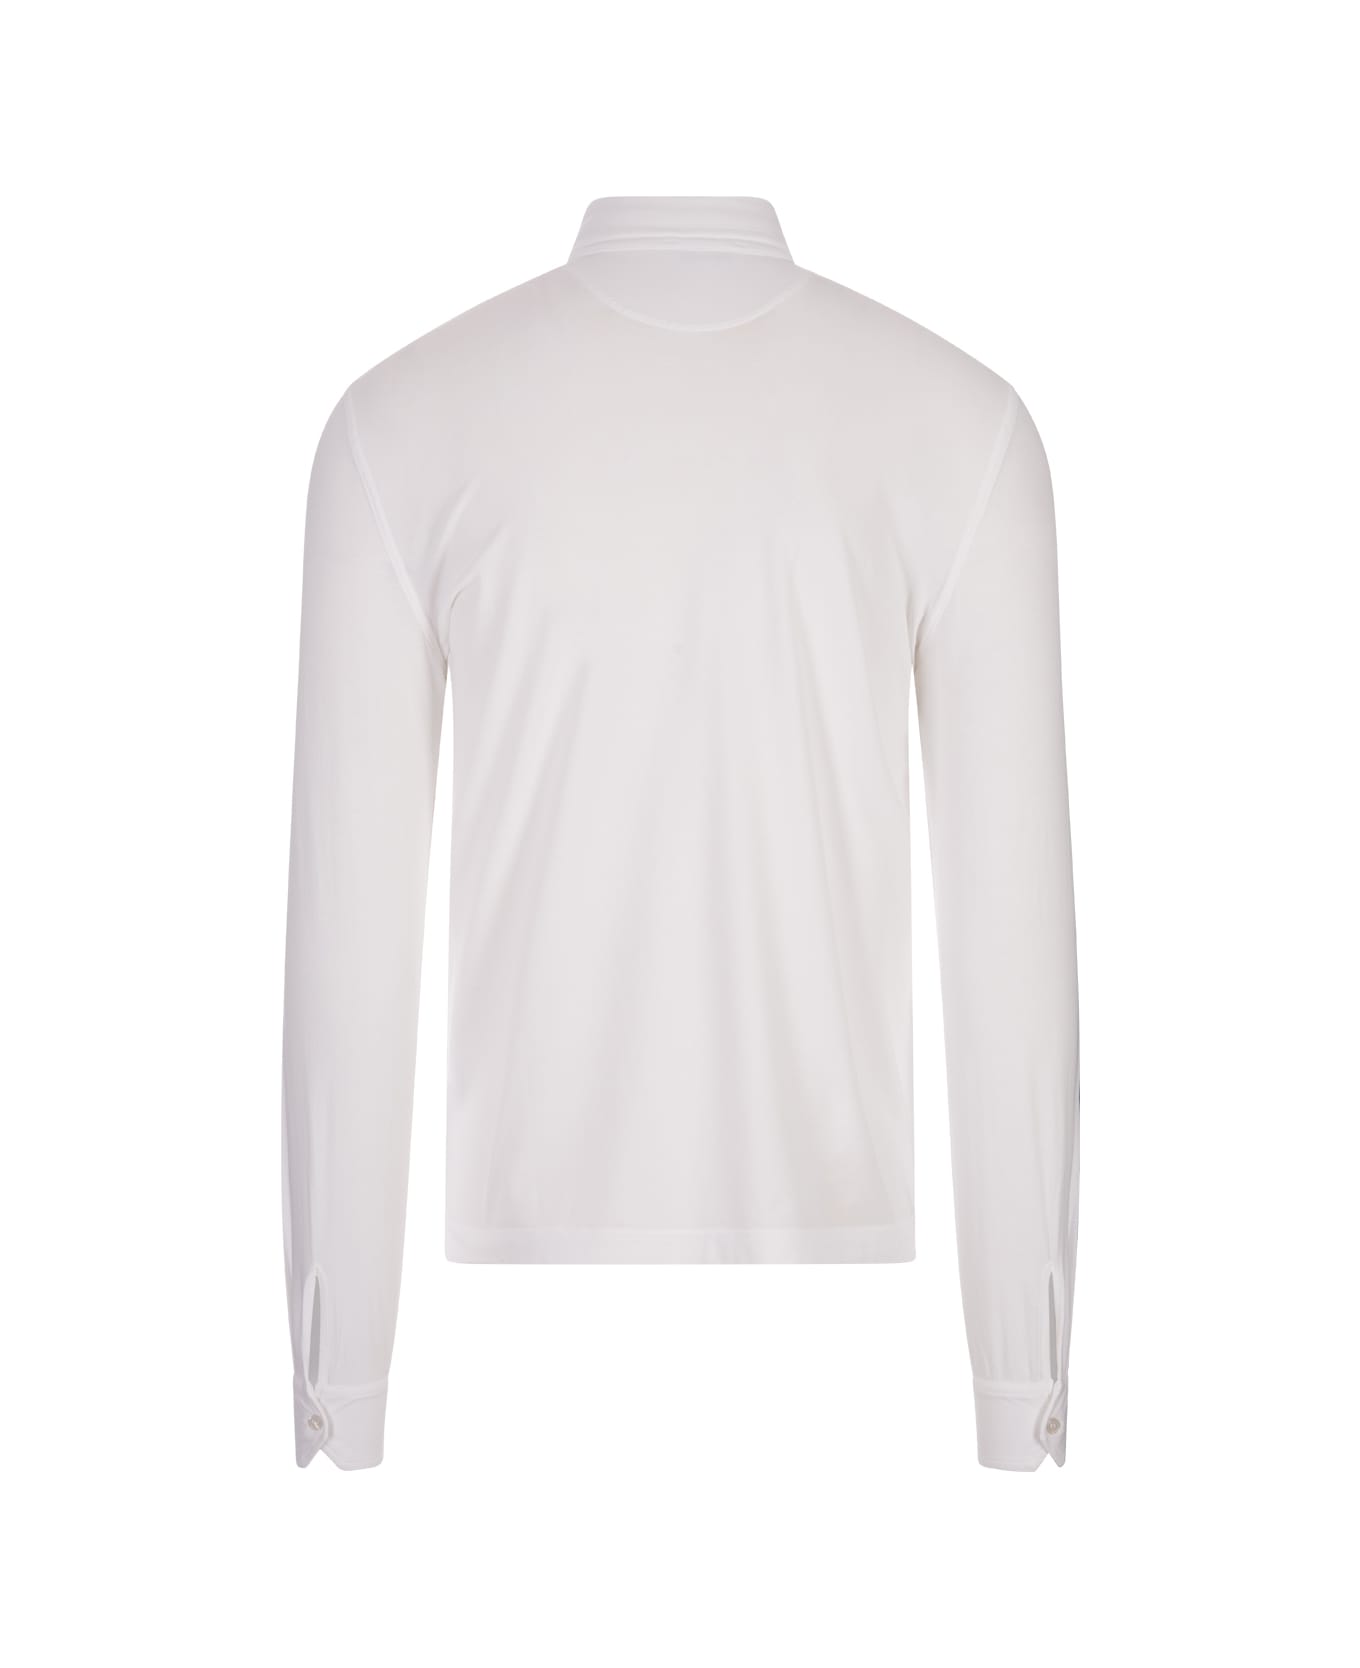 Fedeli White Long Sleeve Polo Shirt - White